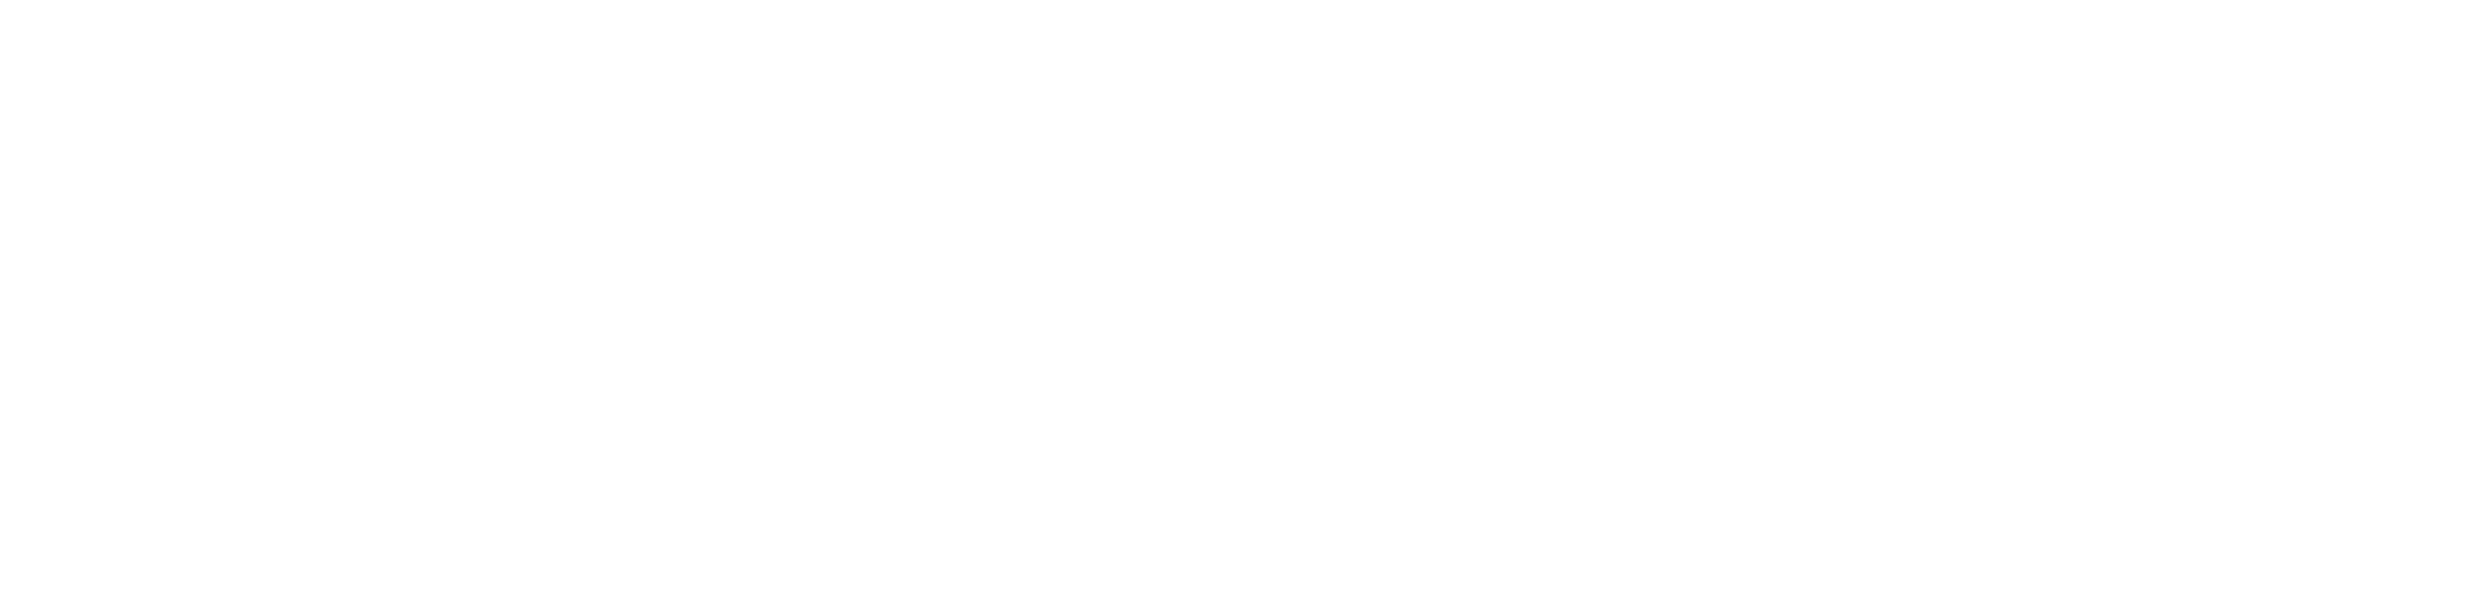 IXXAT logo white